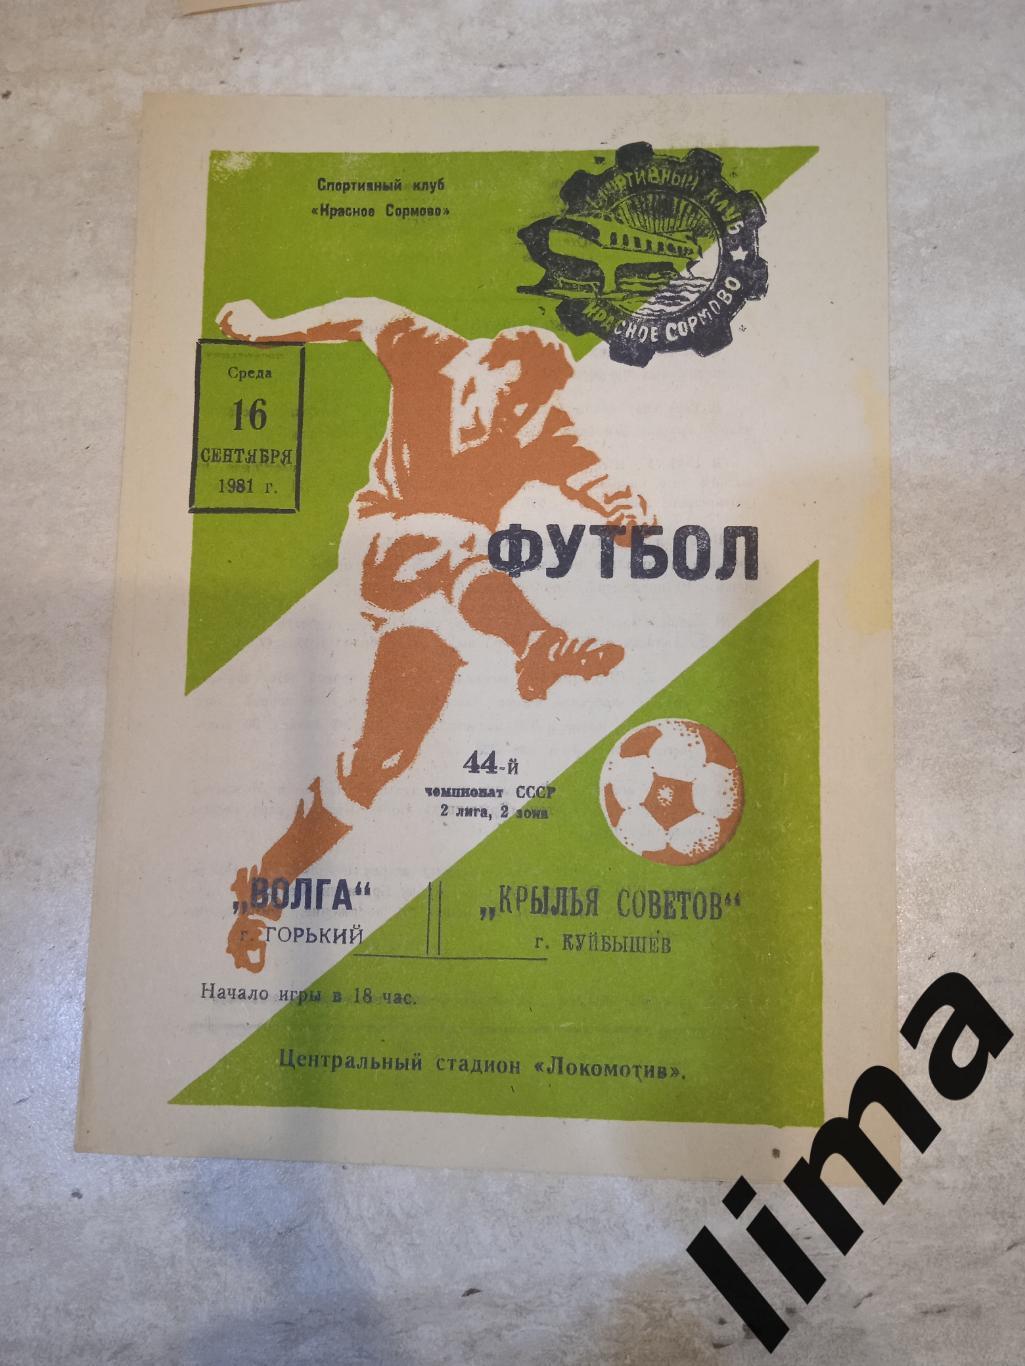 Волга Горький -Крылья Советов Куйбышев-1981